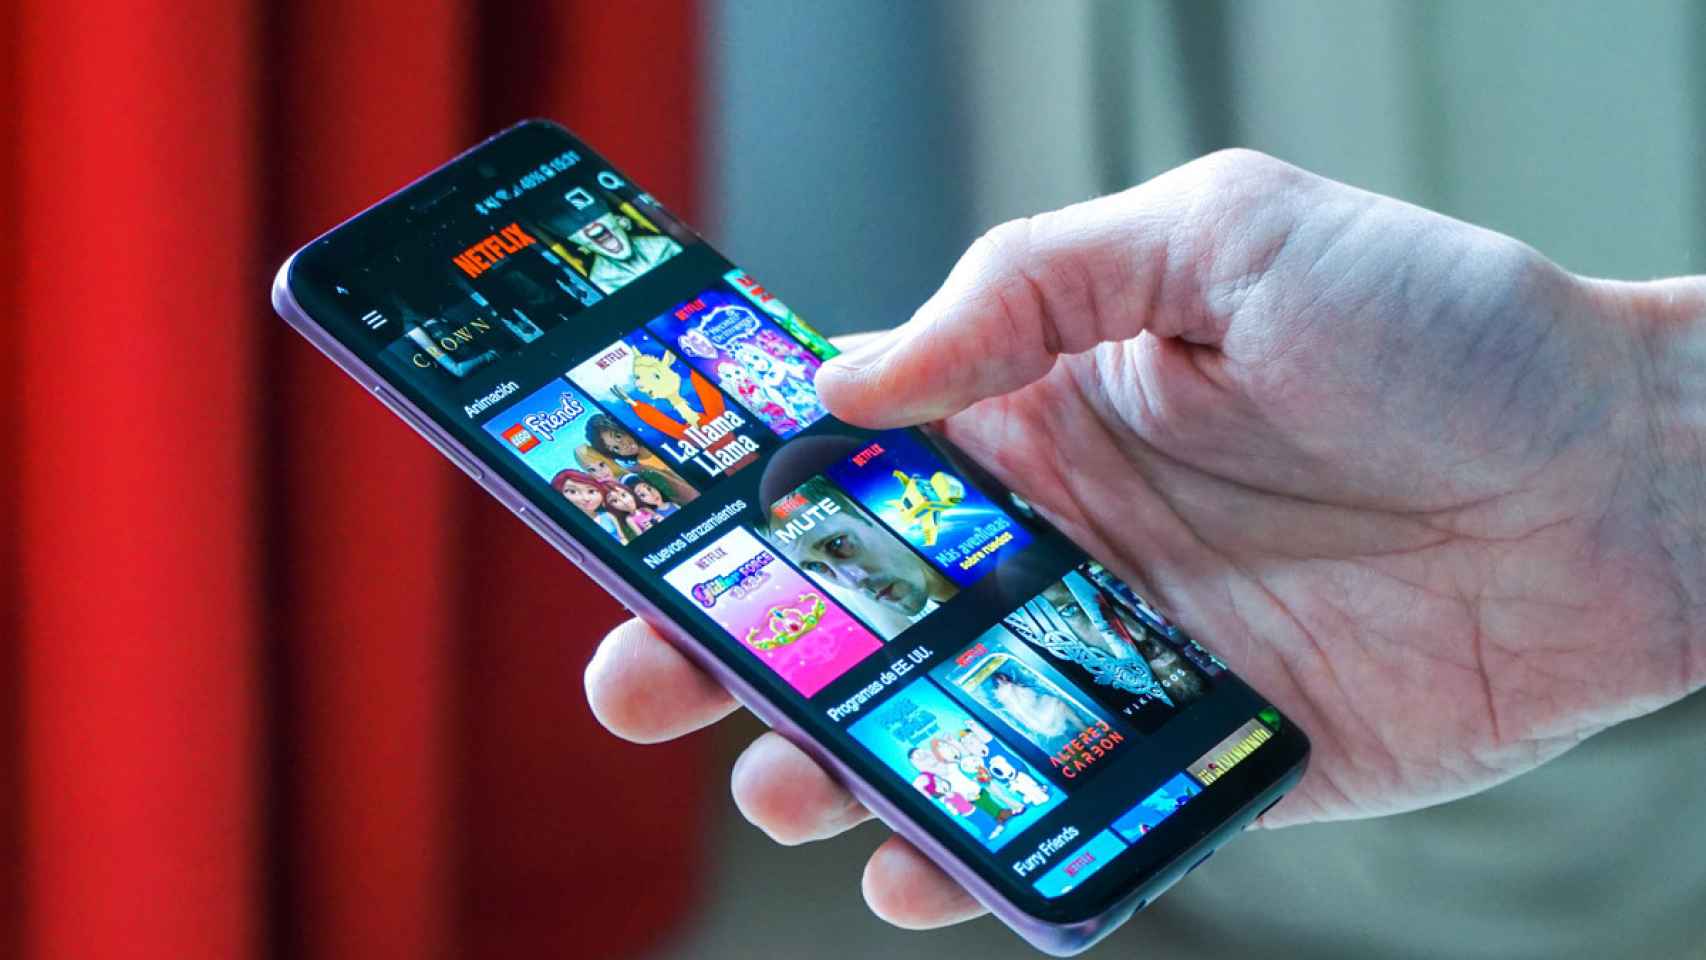 La aplicación de Netflix abierta en un teléfono móvil Android.